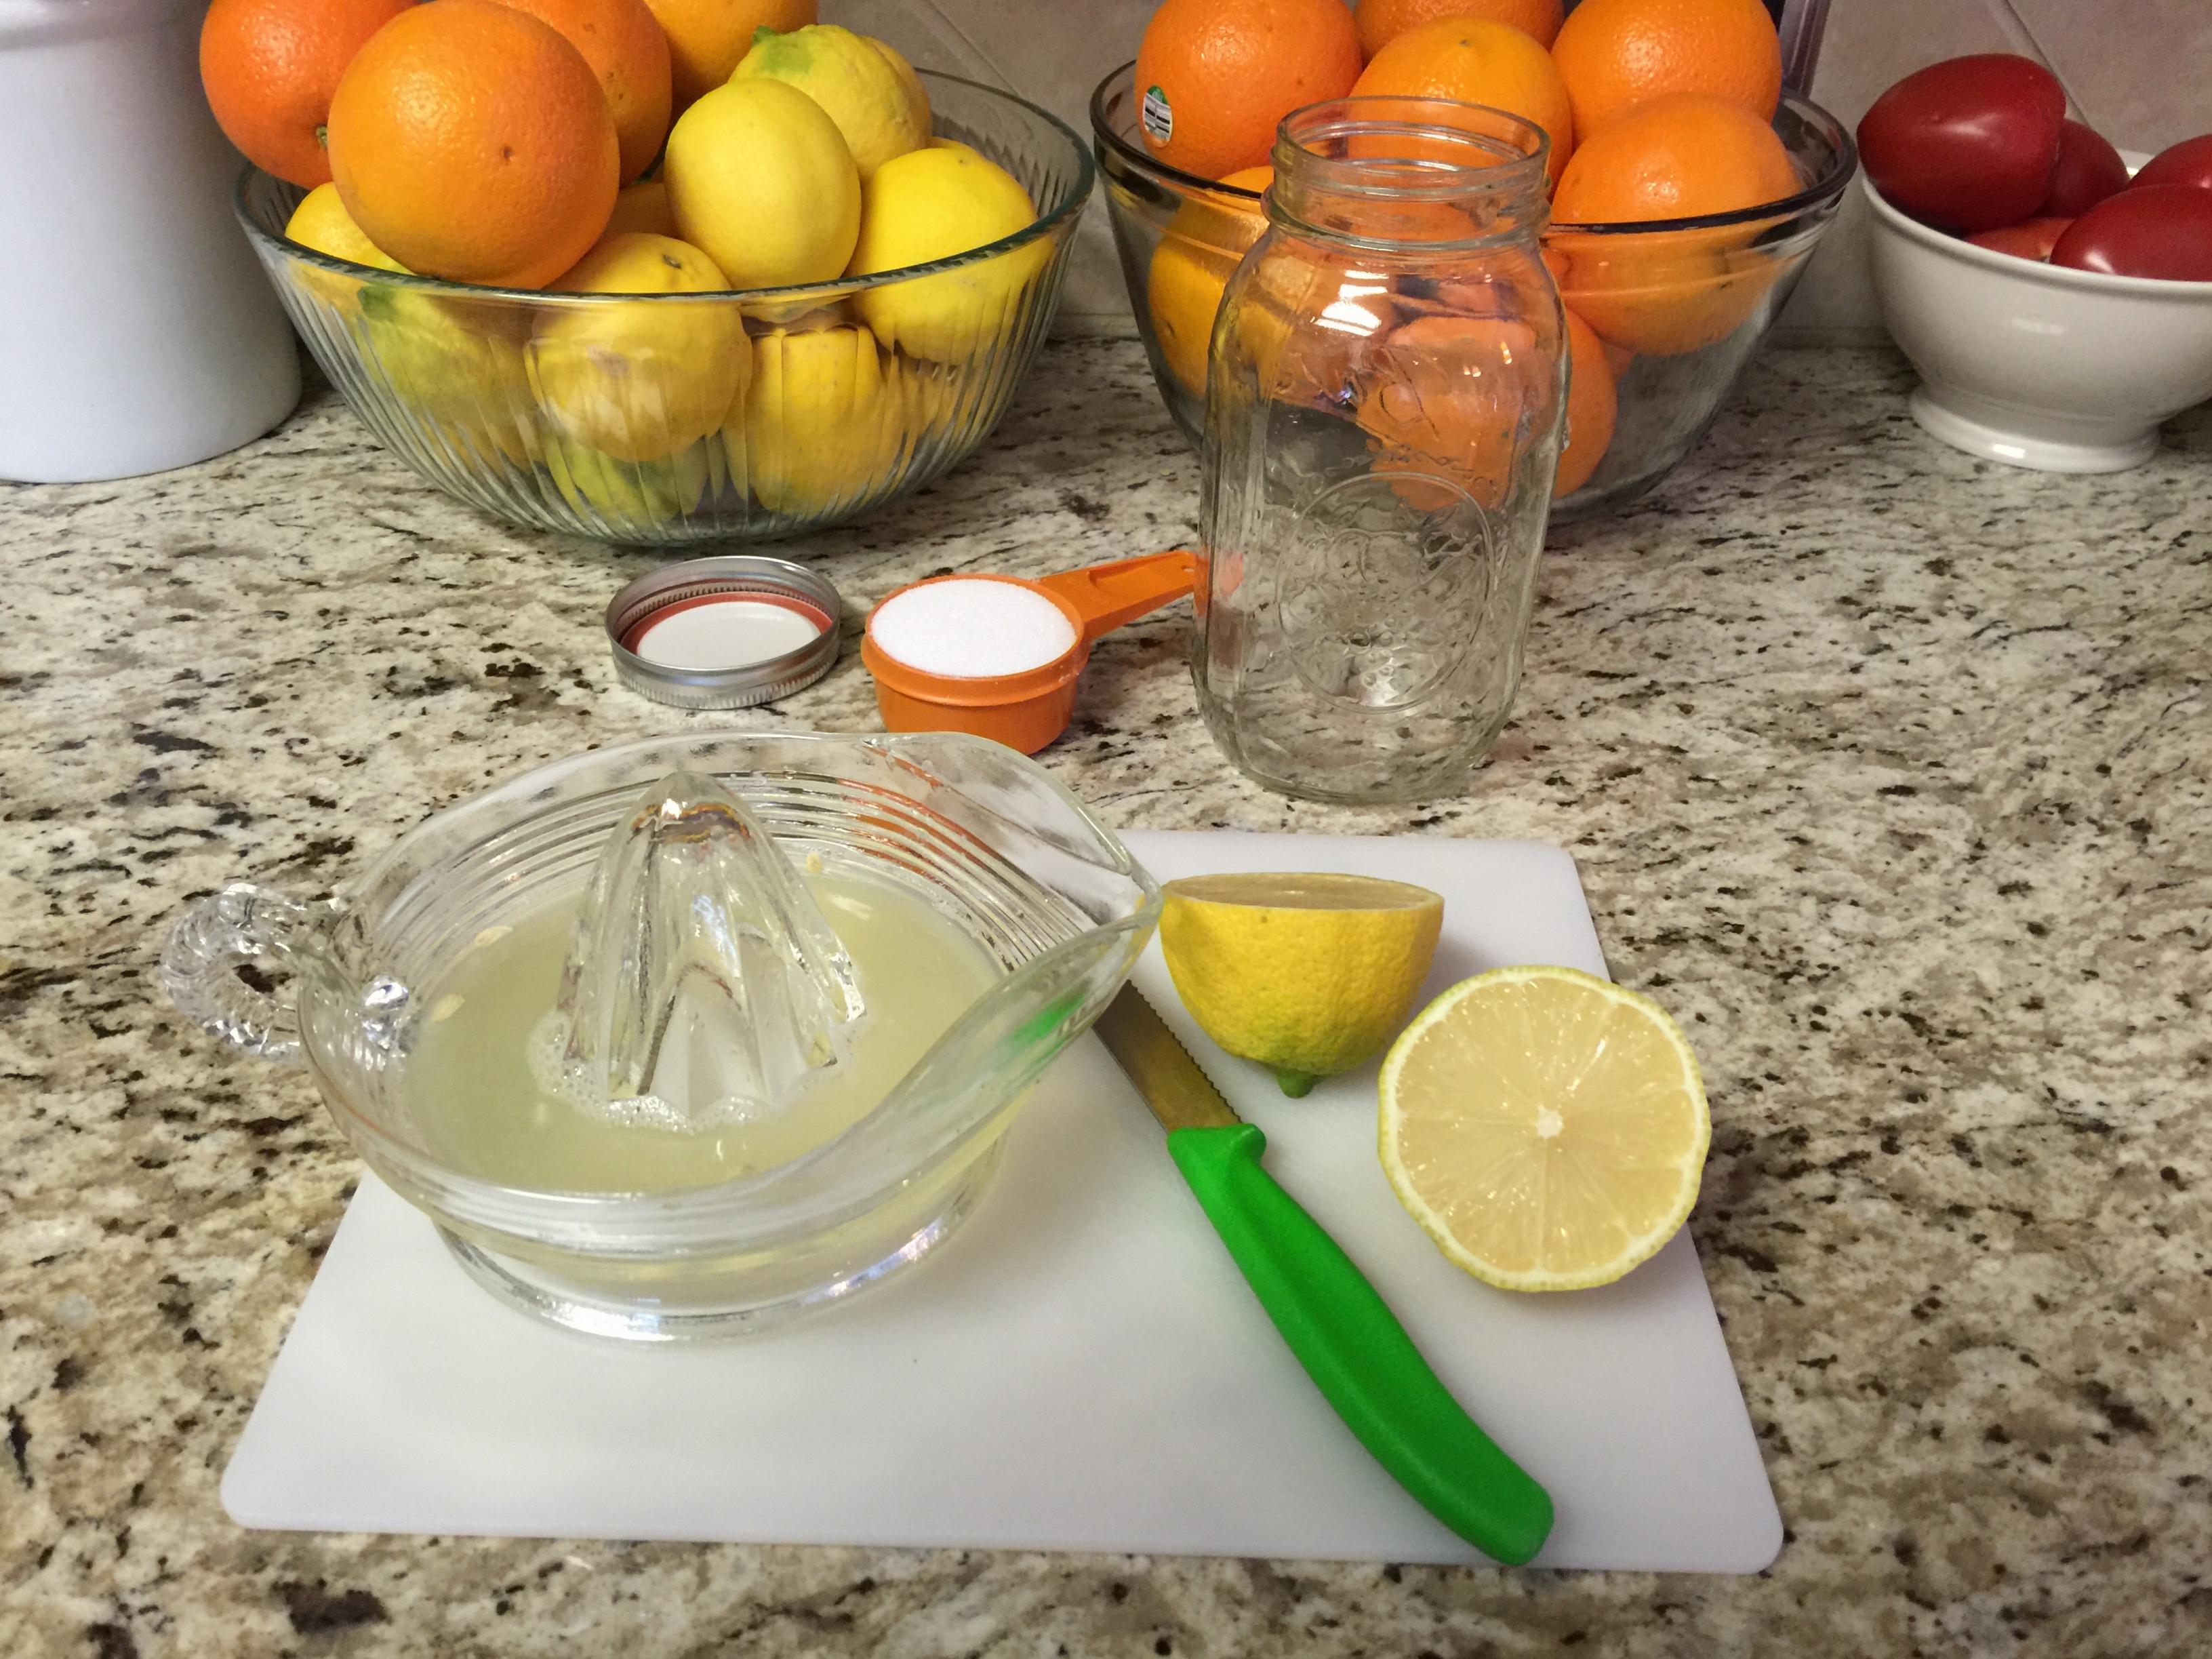 Making lemonade